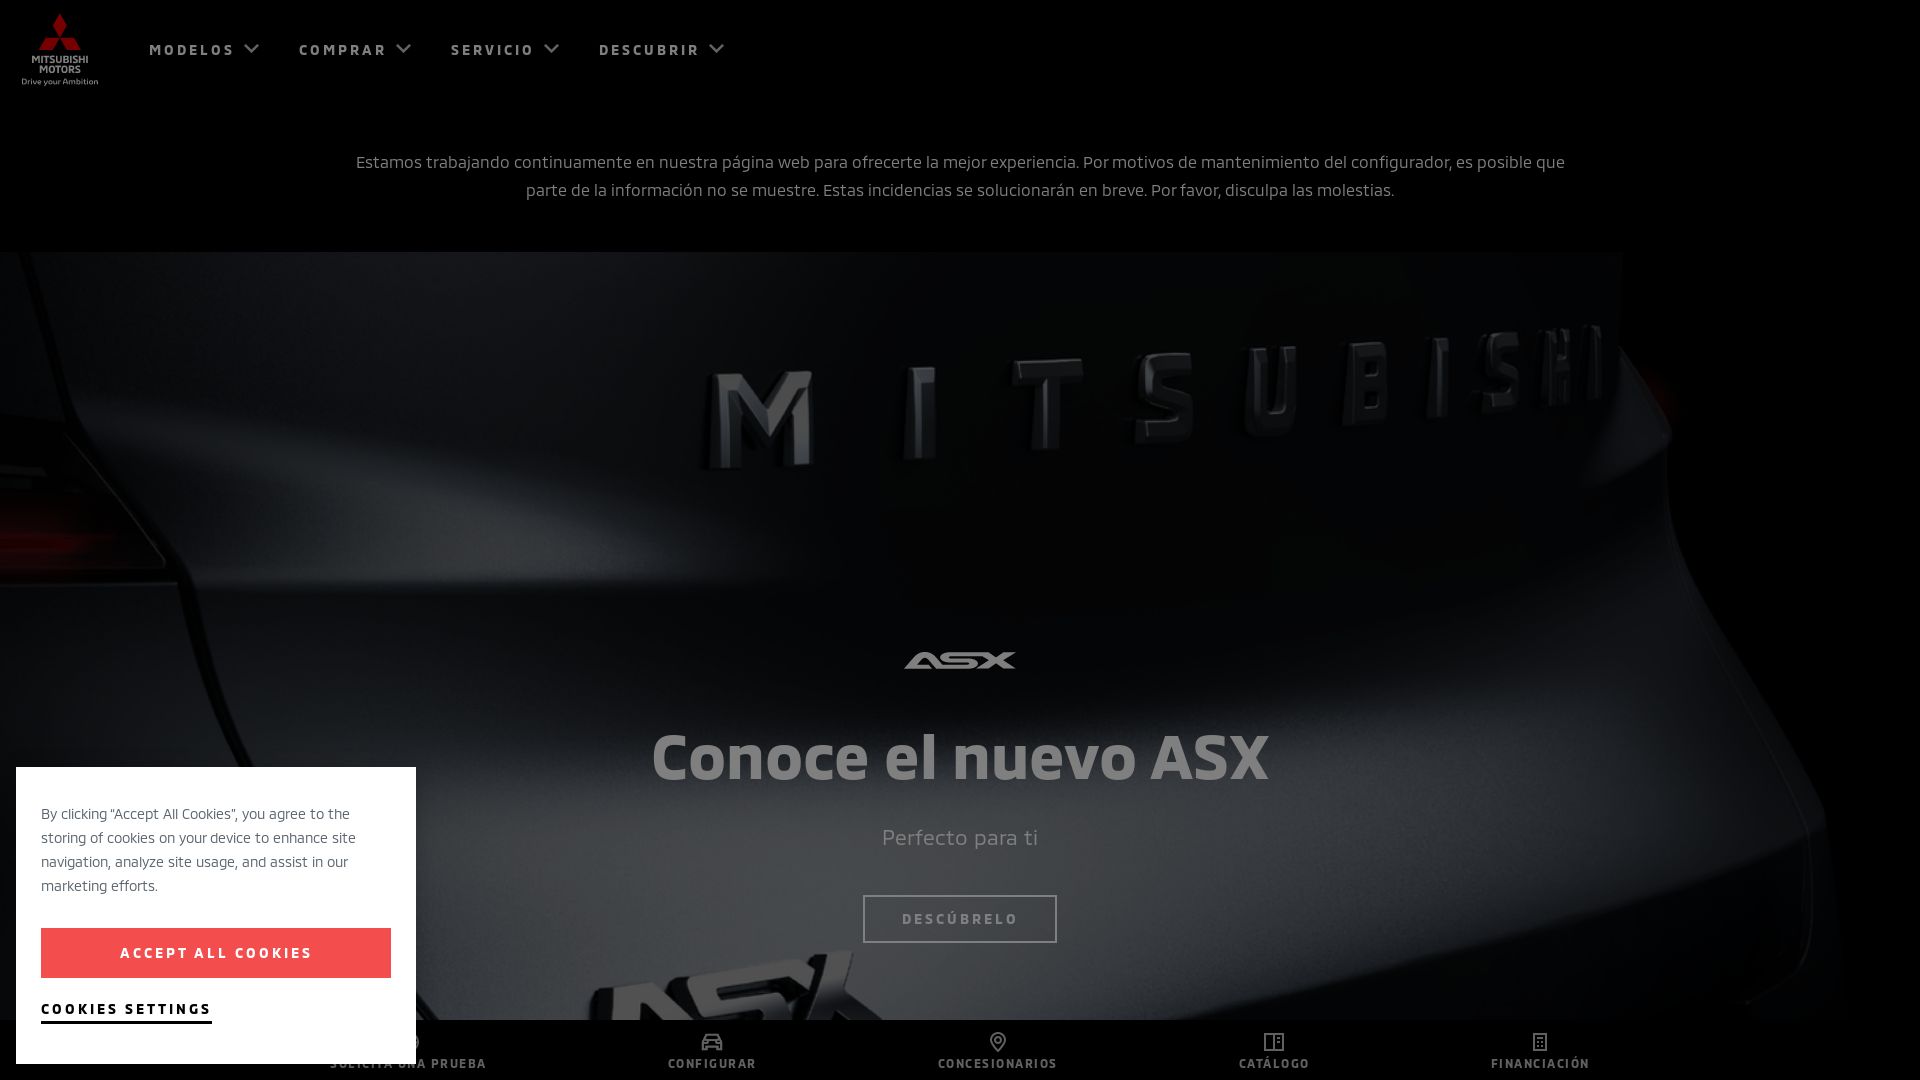 вебсайт mitsubishi-motors.es Є   ONLINE